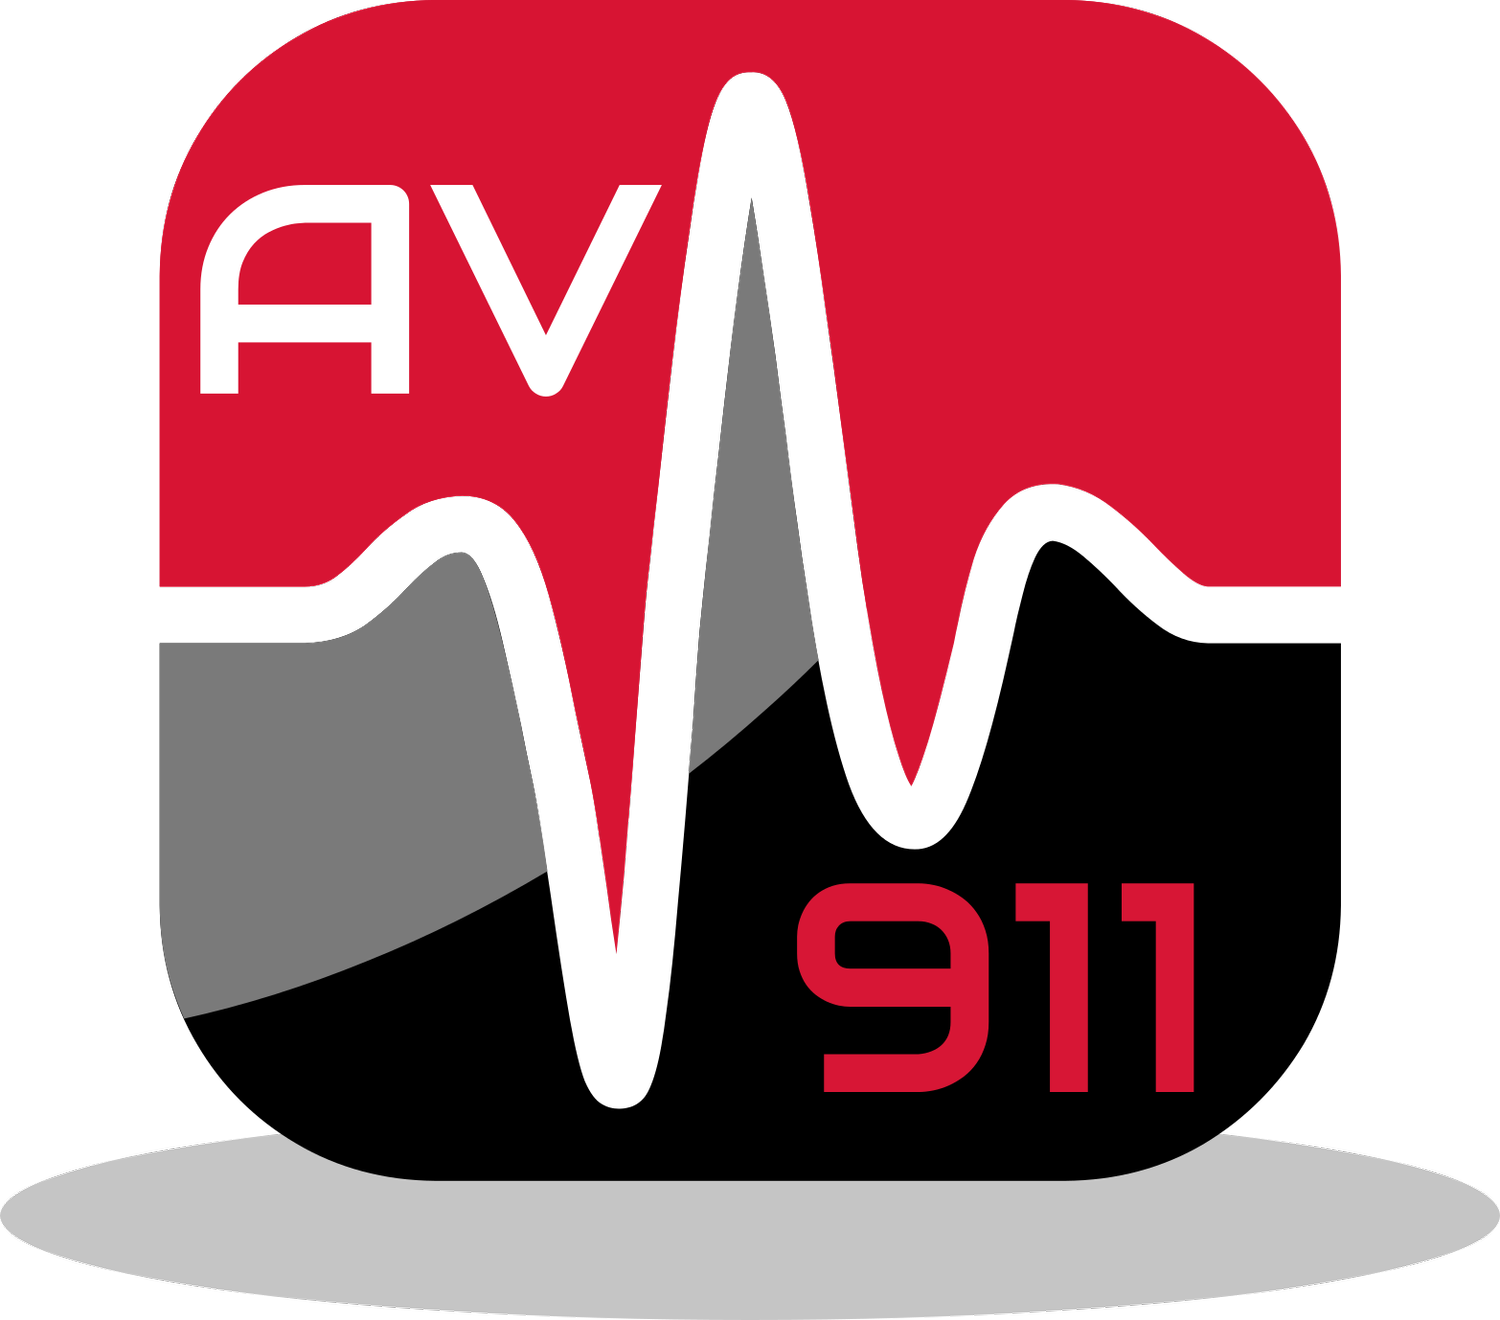 AV-911 | Emergency Is Our Name